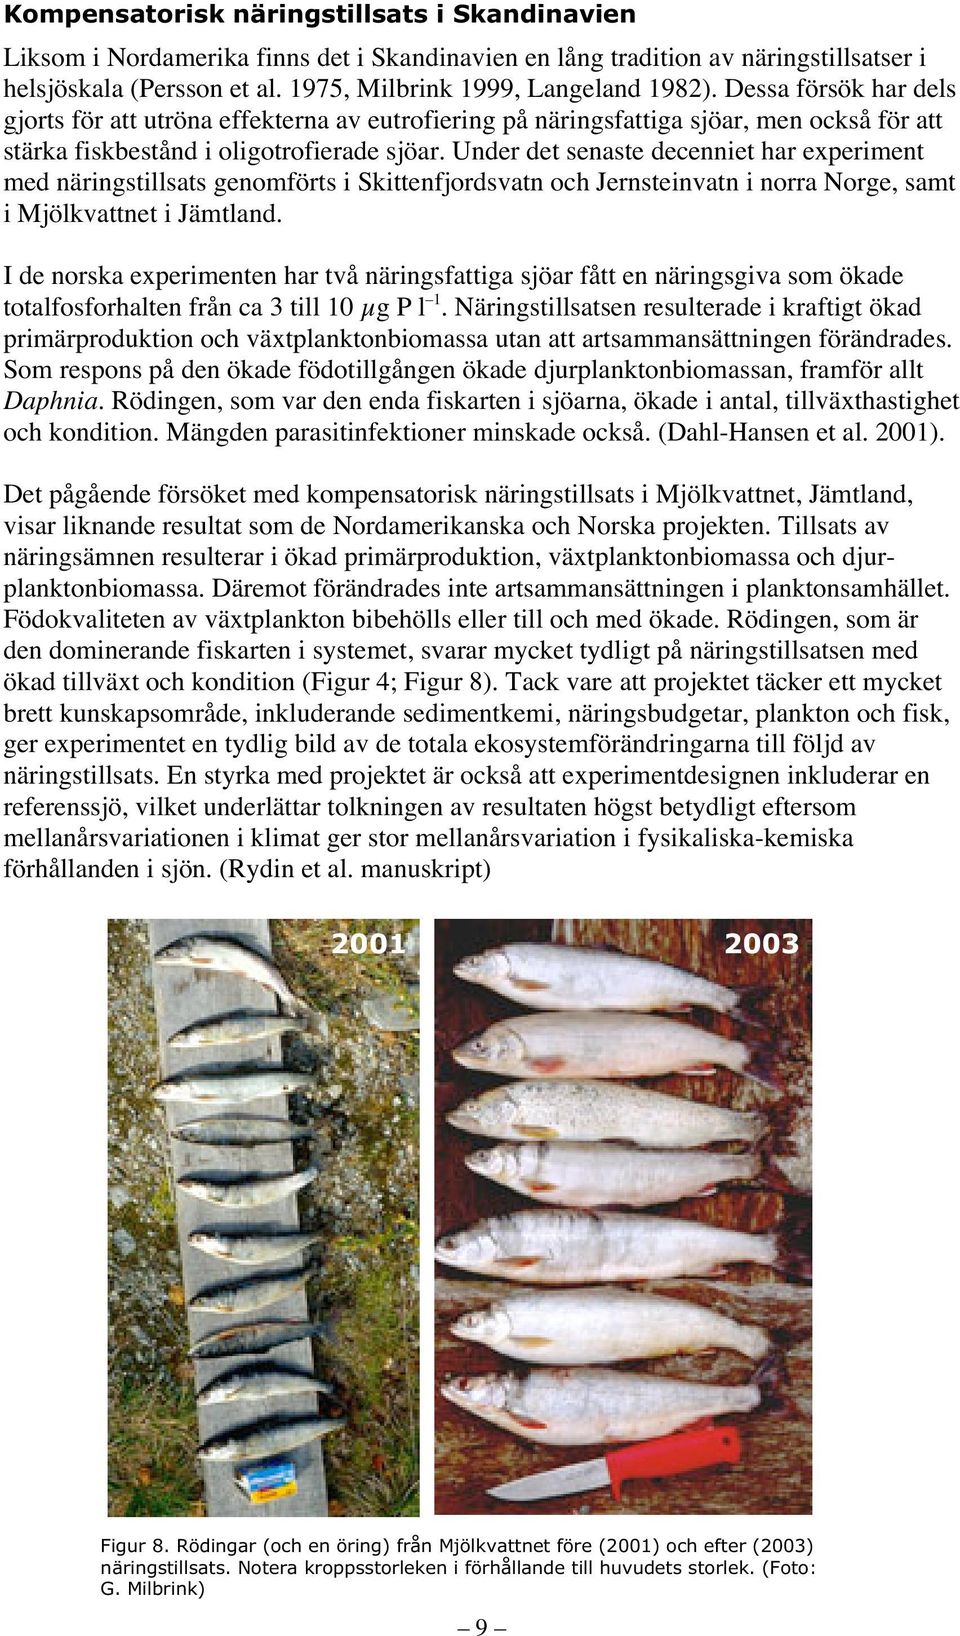 Under det senaste decenniet har experiment med näringstillsats genomförts i Skittenfjordsvatn och Jernsteinvatn i norra Norge, samt i Mjölkvattnet i Jämtland.